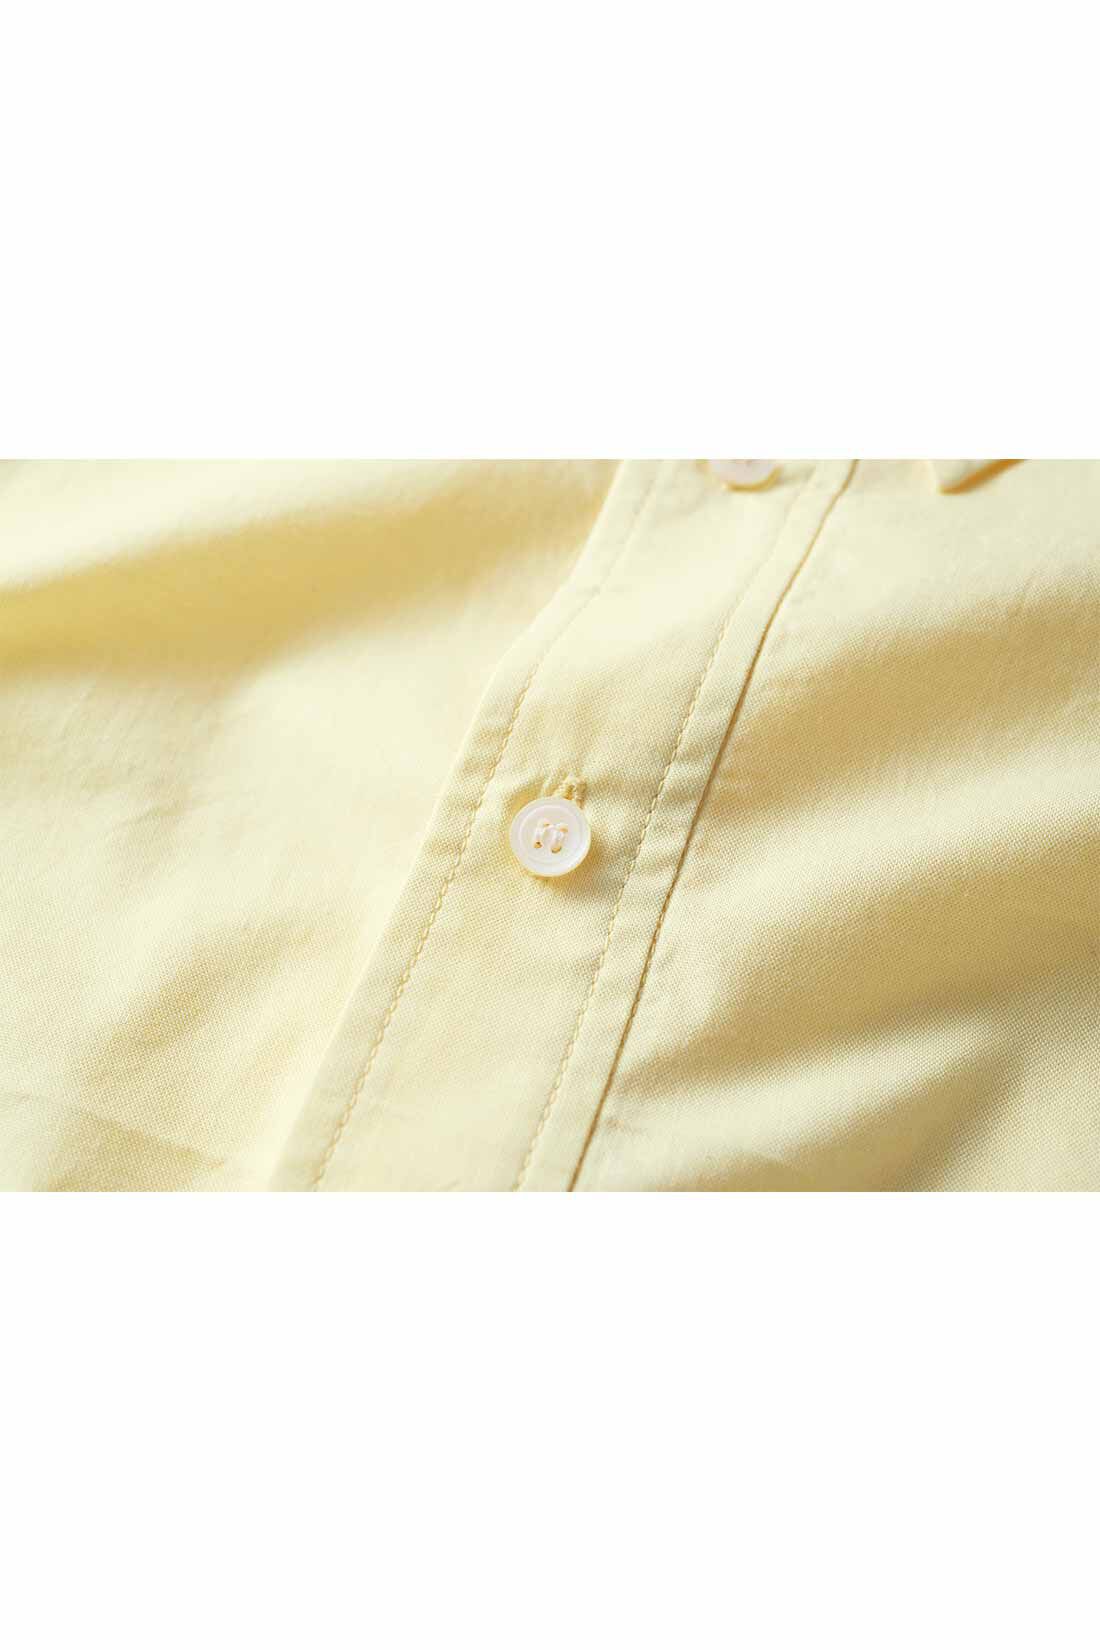 Real Stock|THREE FIFTY STANDARD クリームイエローのボタンダウンシャツ|ほどよい厚みで透けにくい、滑らかな肌ざわりの播州織。